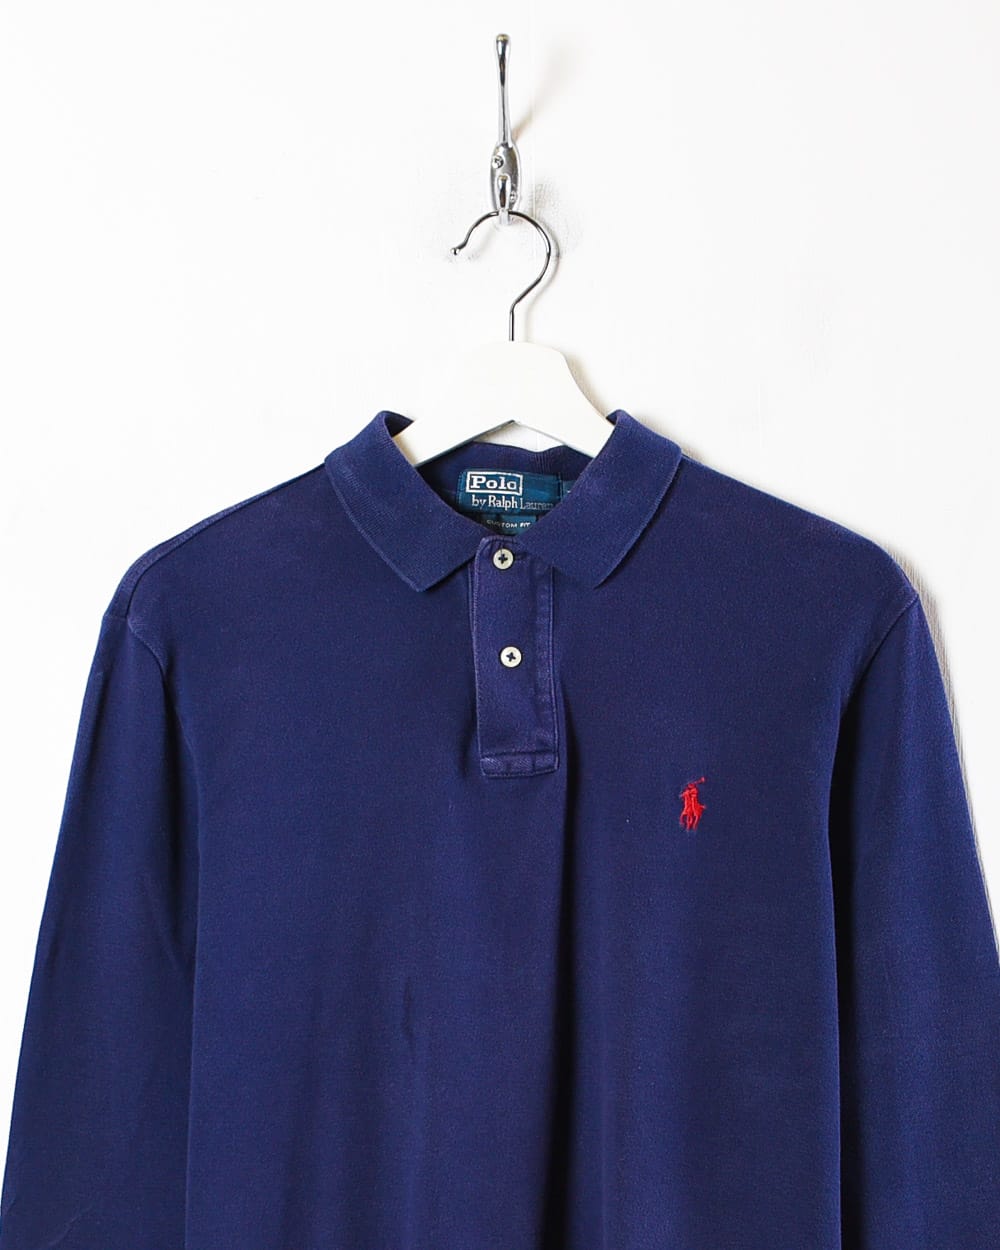 Navy Ralph Lauren Long Sleeved Polo Shirt - Medium